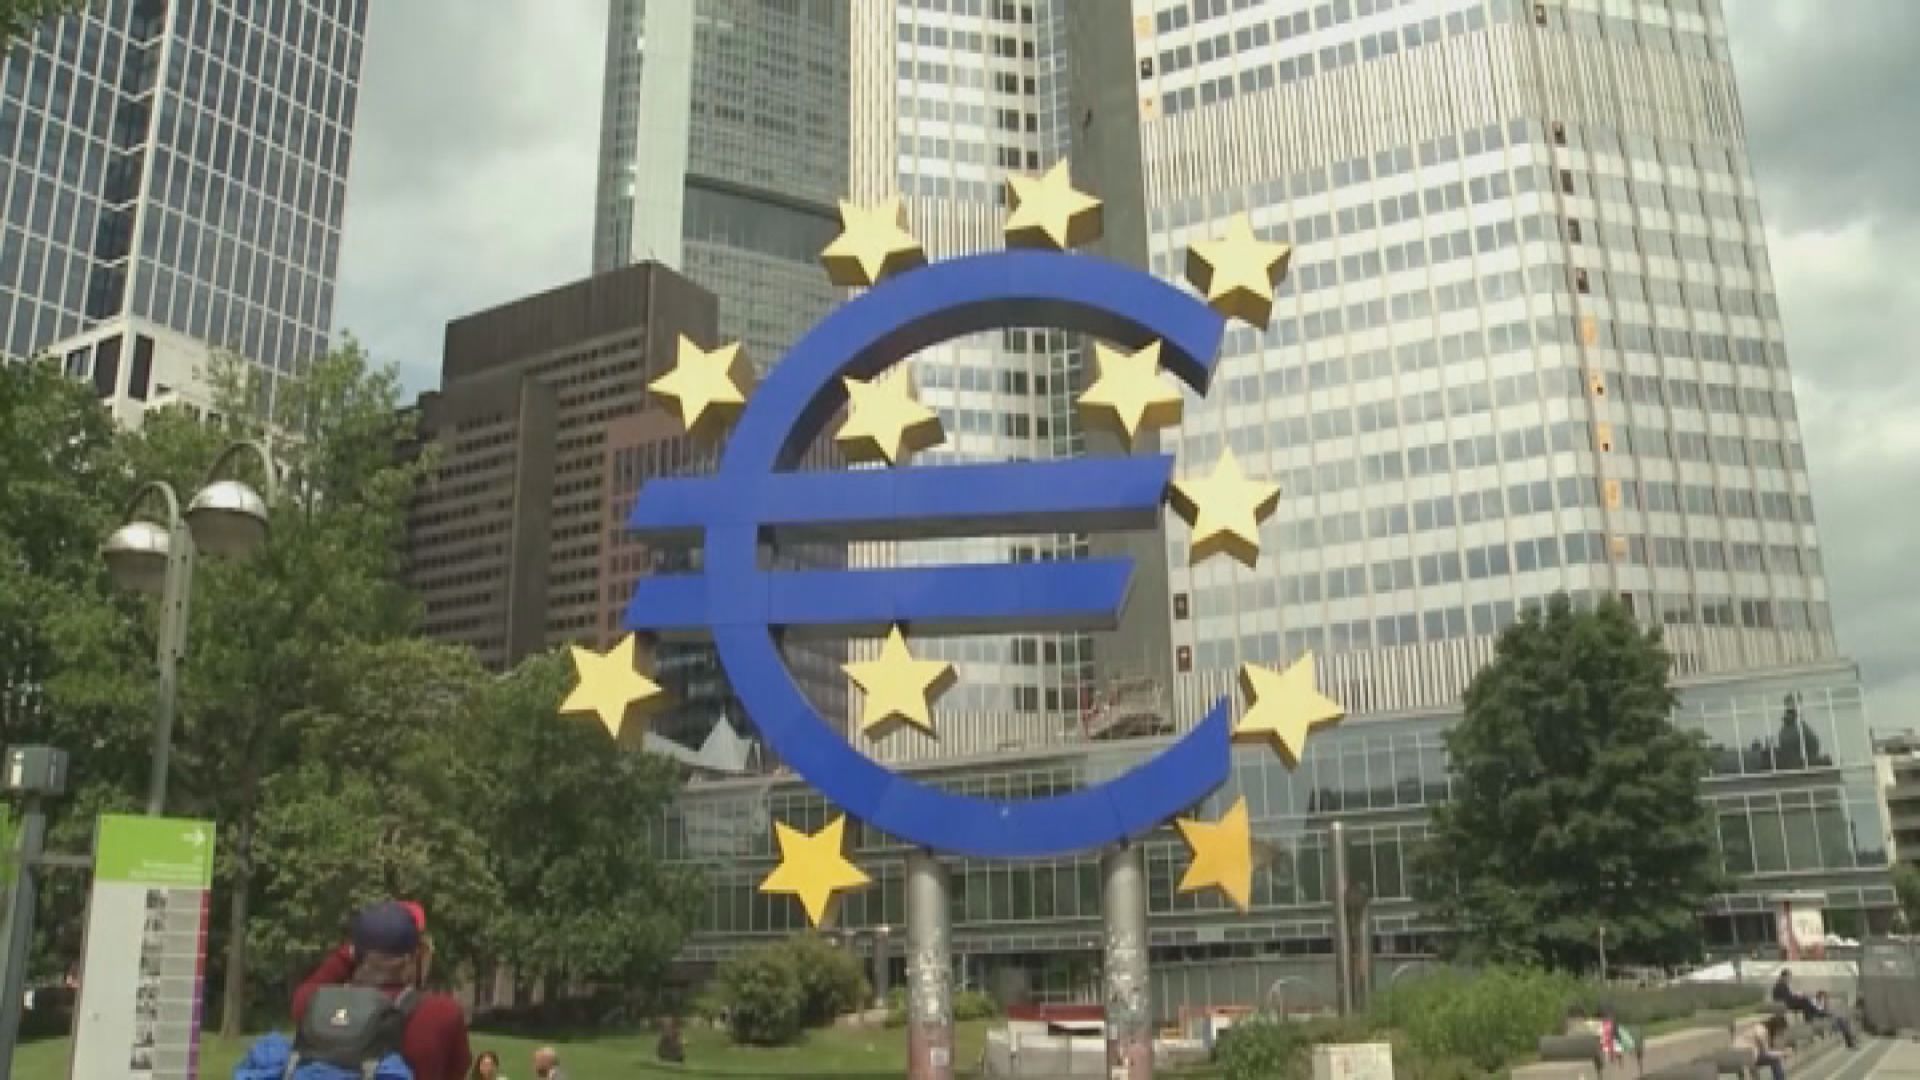 【議息紀錄】歐央行:通脹2025年將回落至2%